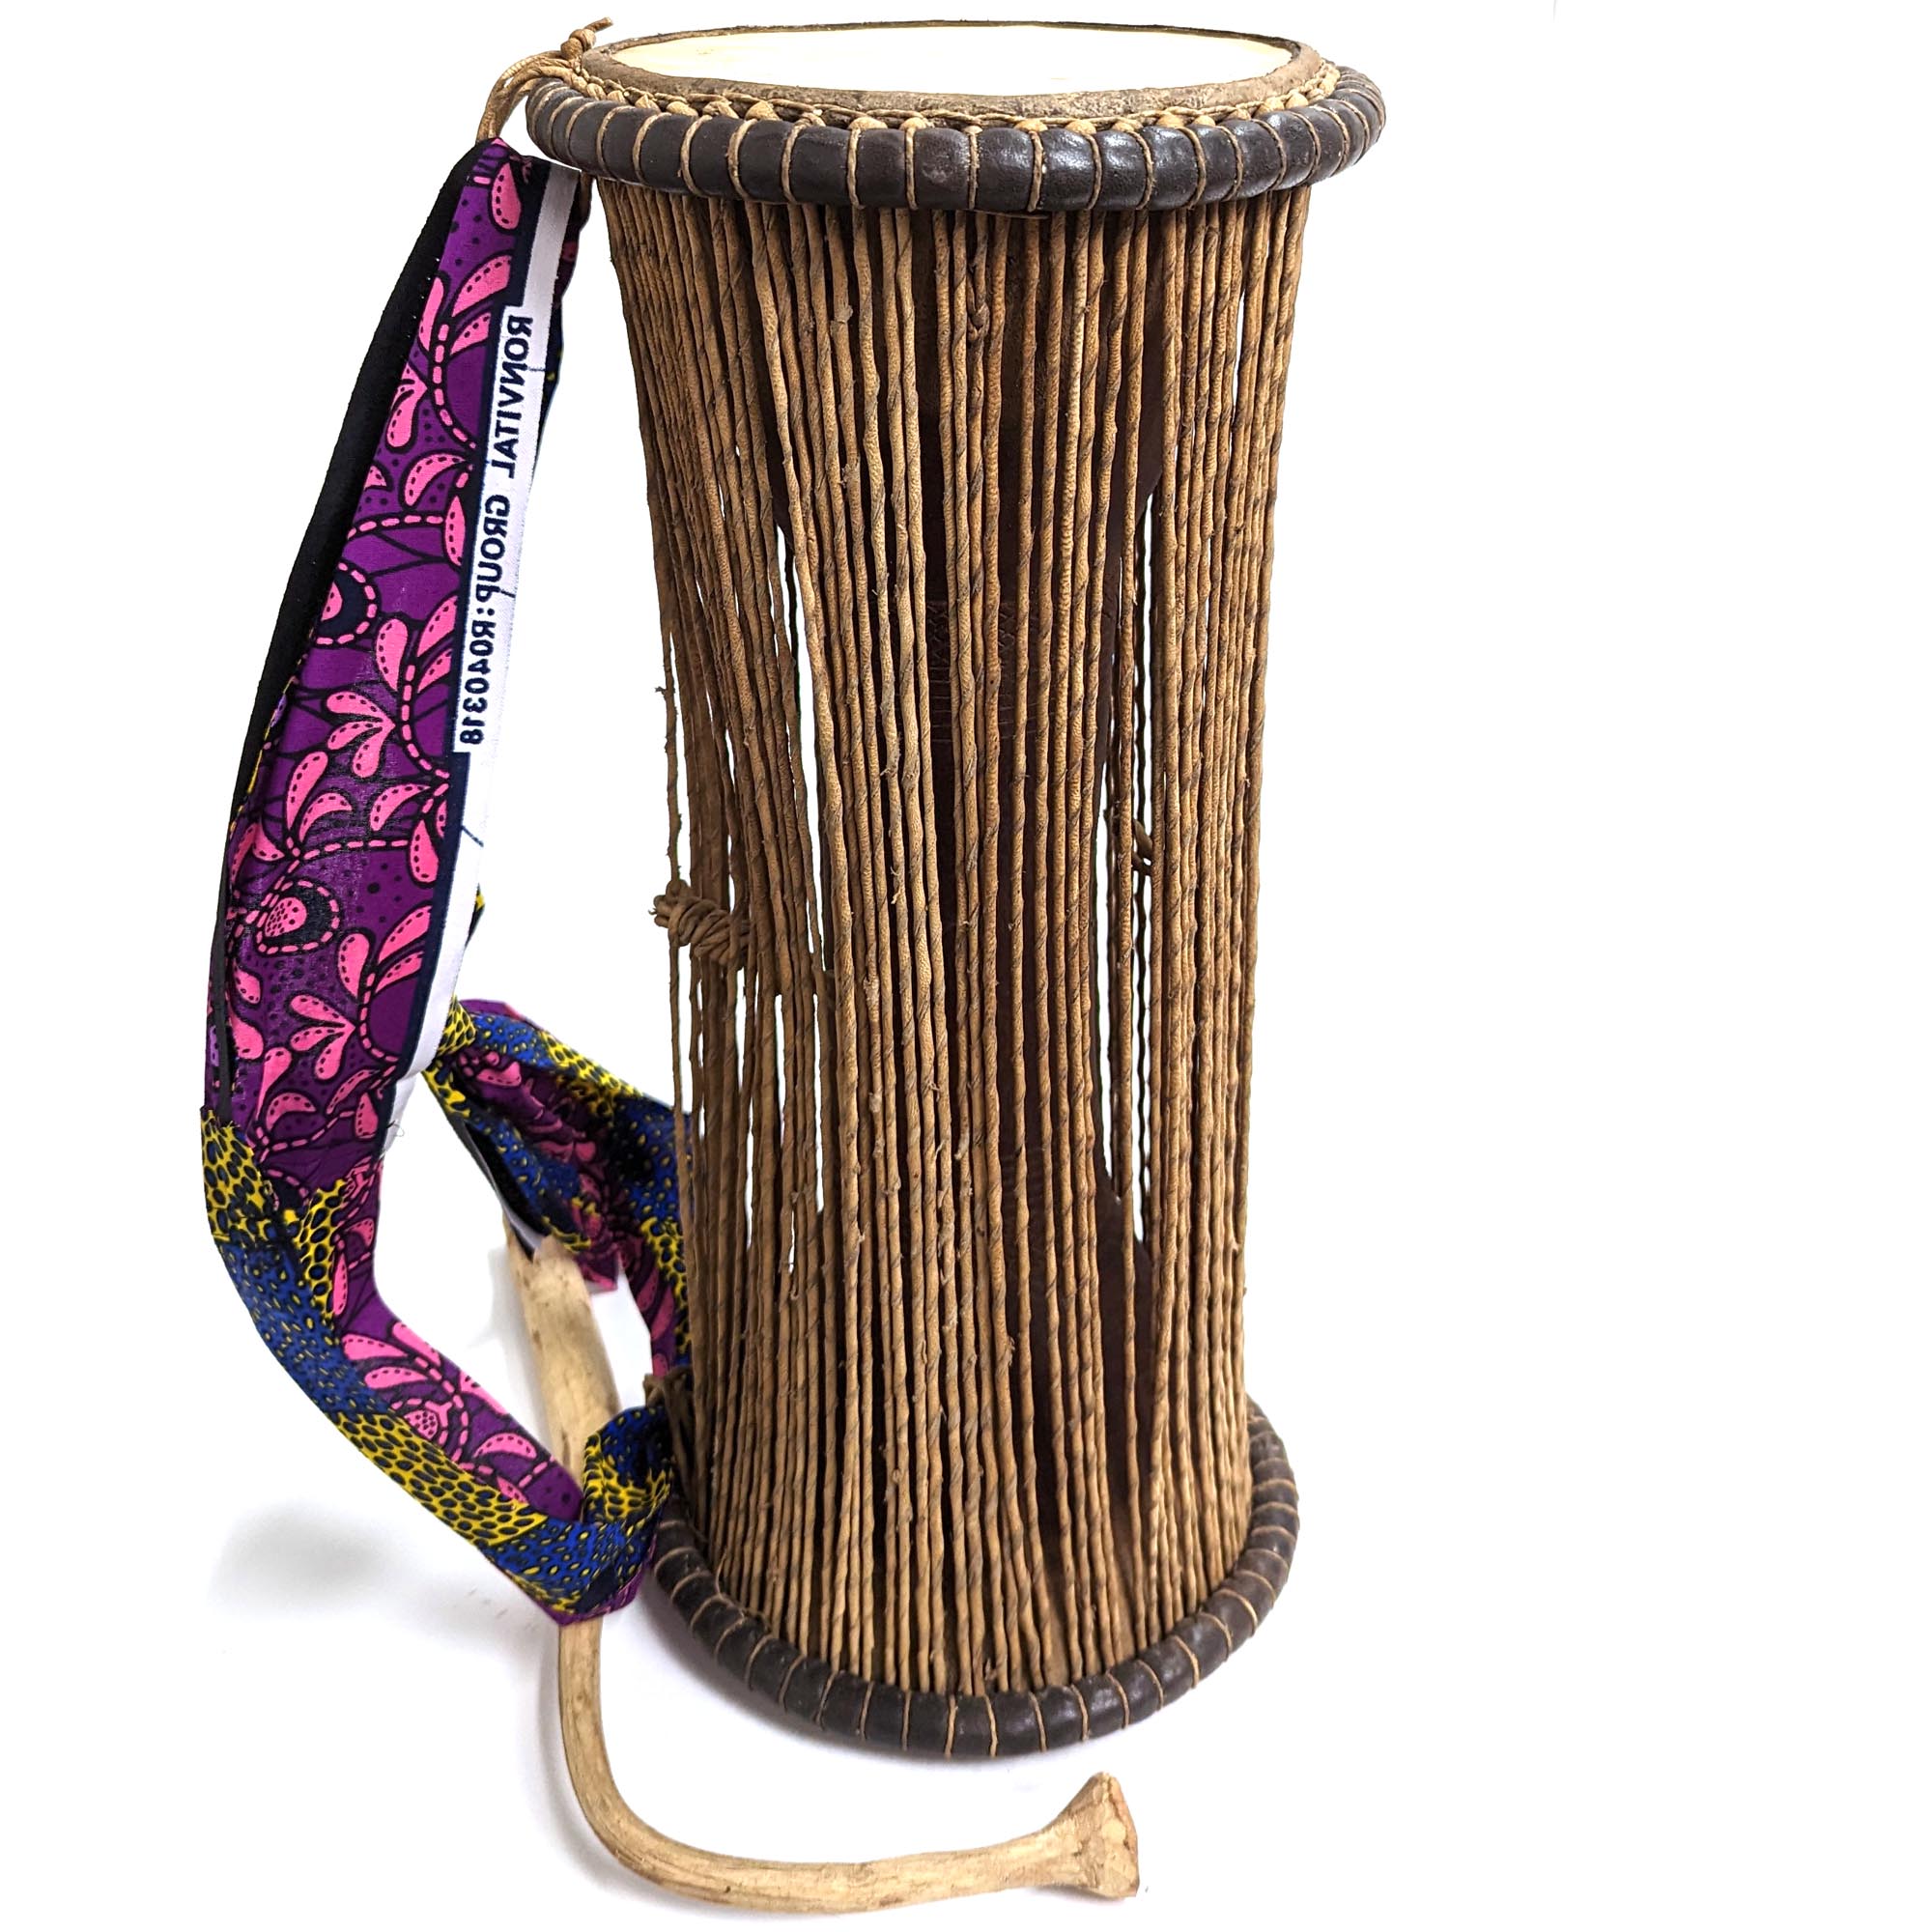 トーキングドラム タマン タムタム アフリカ民族楽器 （p015-12） - アフリカ雑貨店 アフロモード